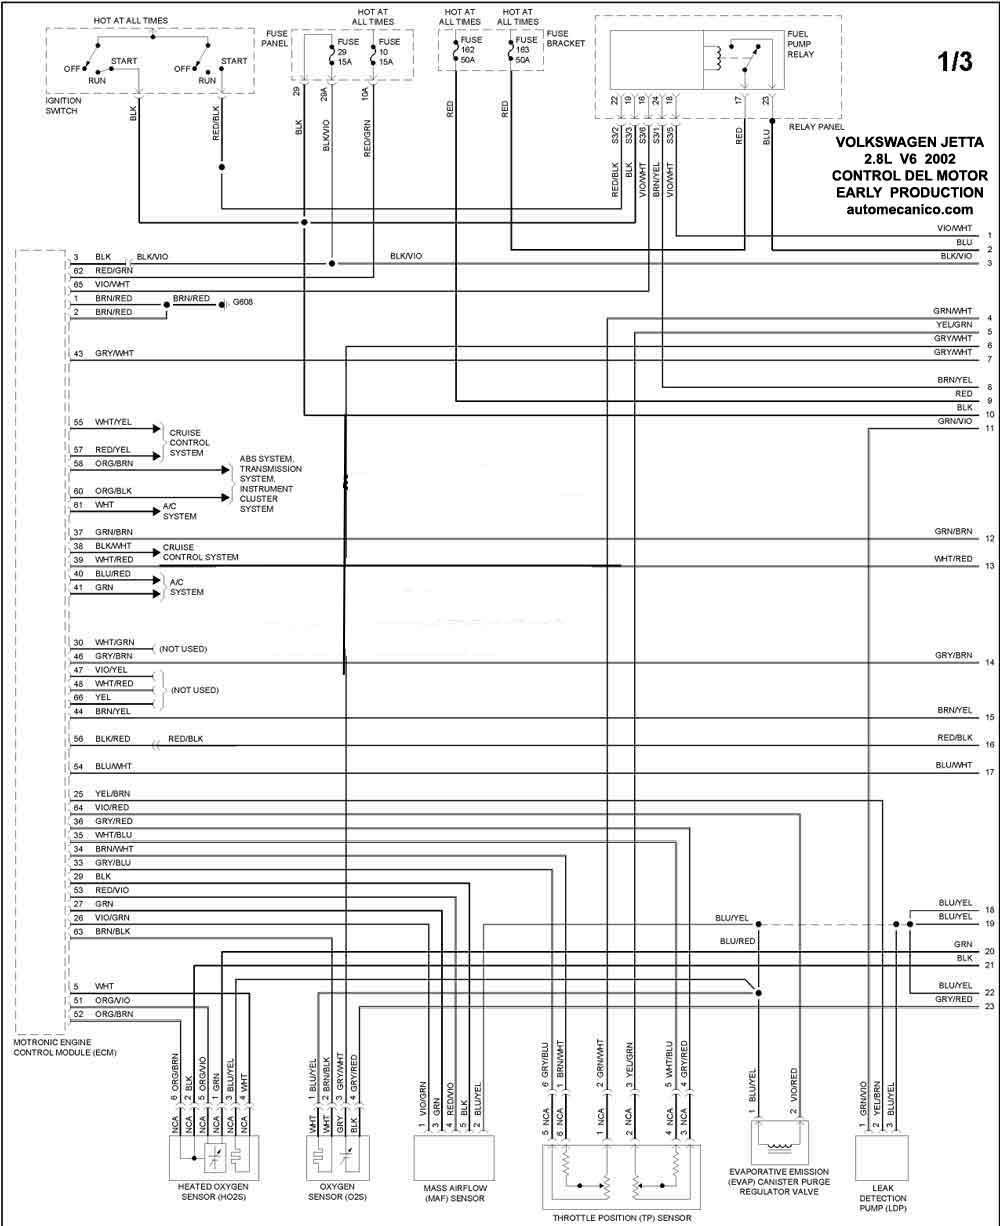 Volkswagen-Diagramas-Graphics-2002